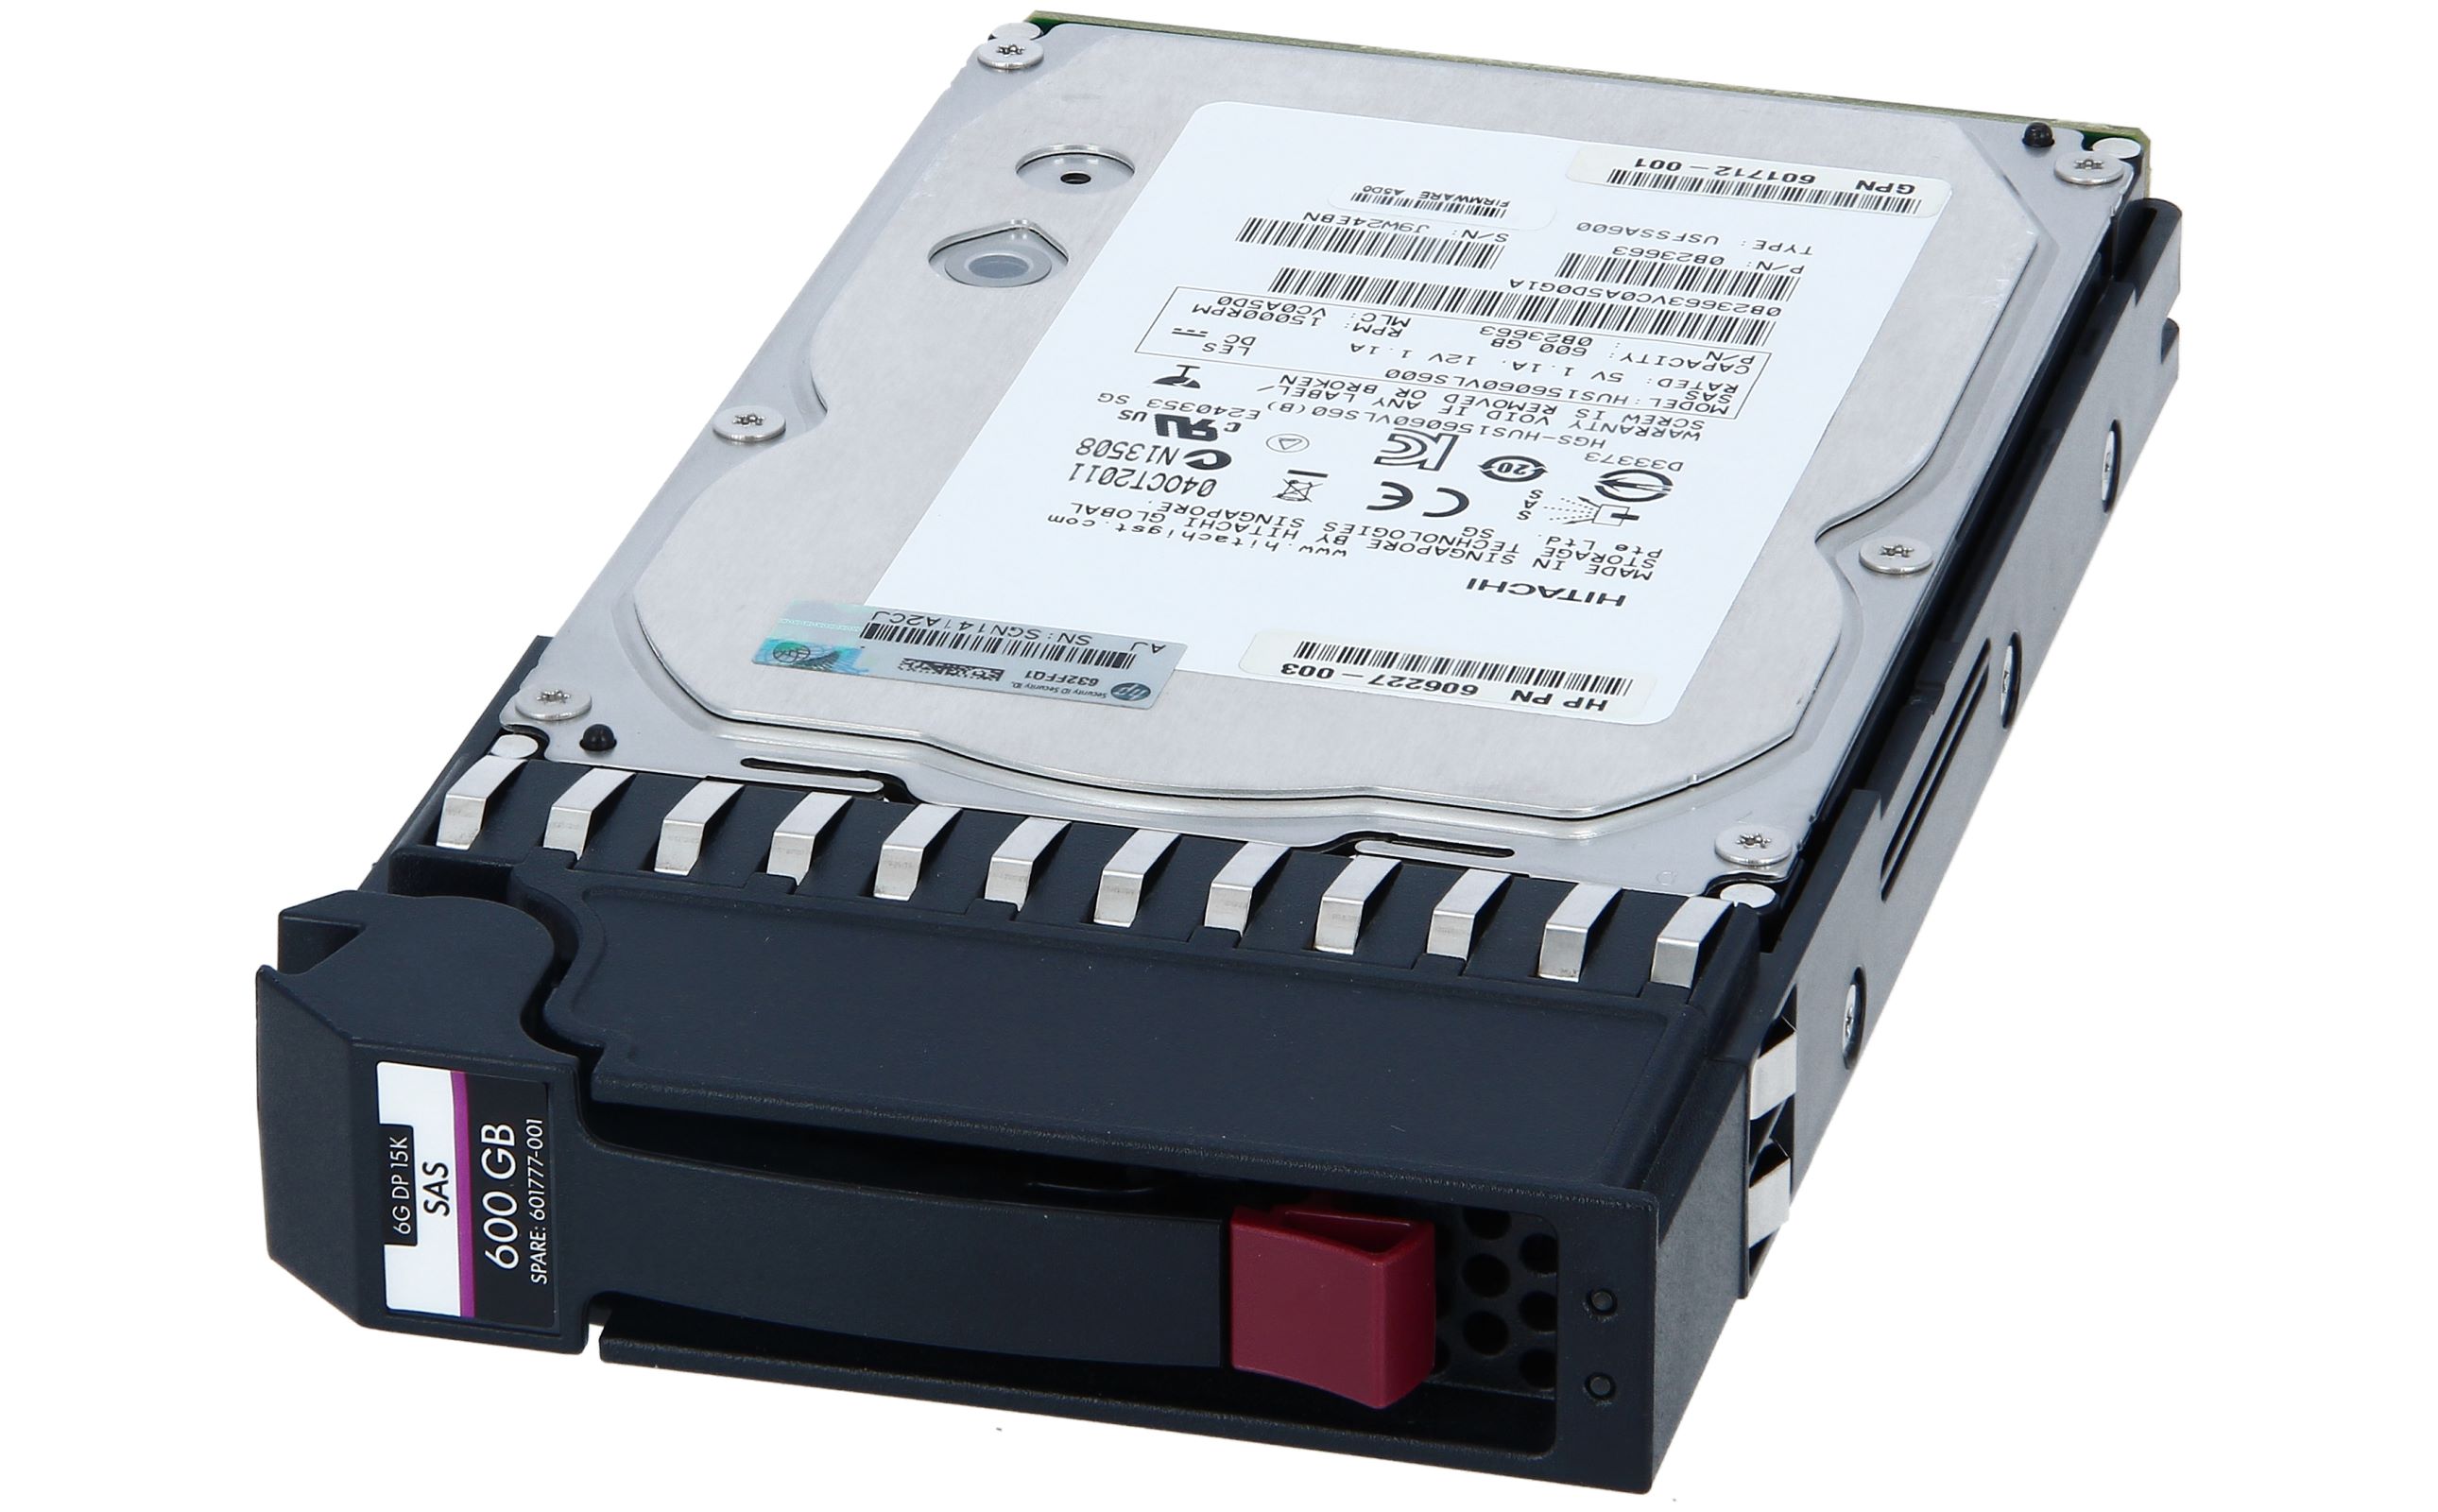 P2000用 600GB 6G 15K 3.5型 DP SAS ディスクドライブ - パソコン周辺機器